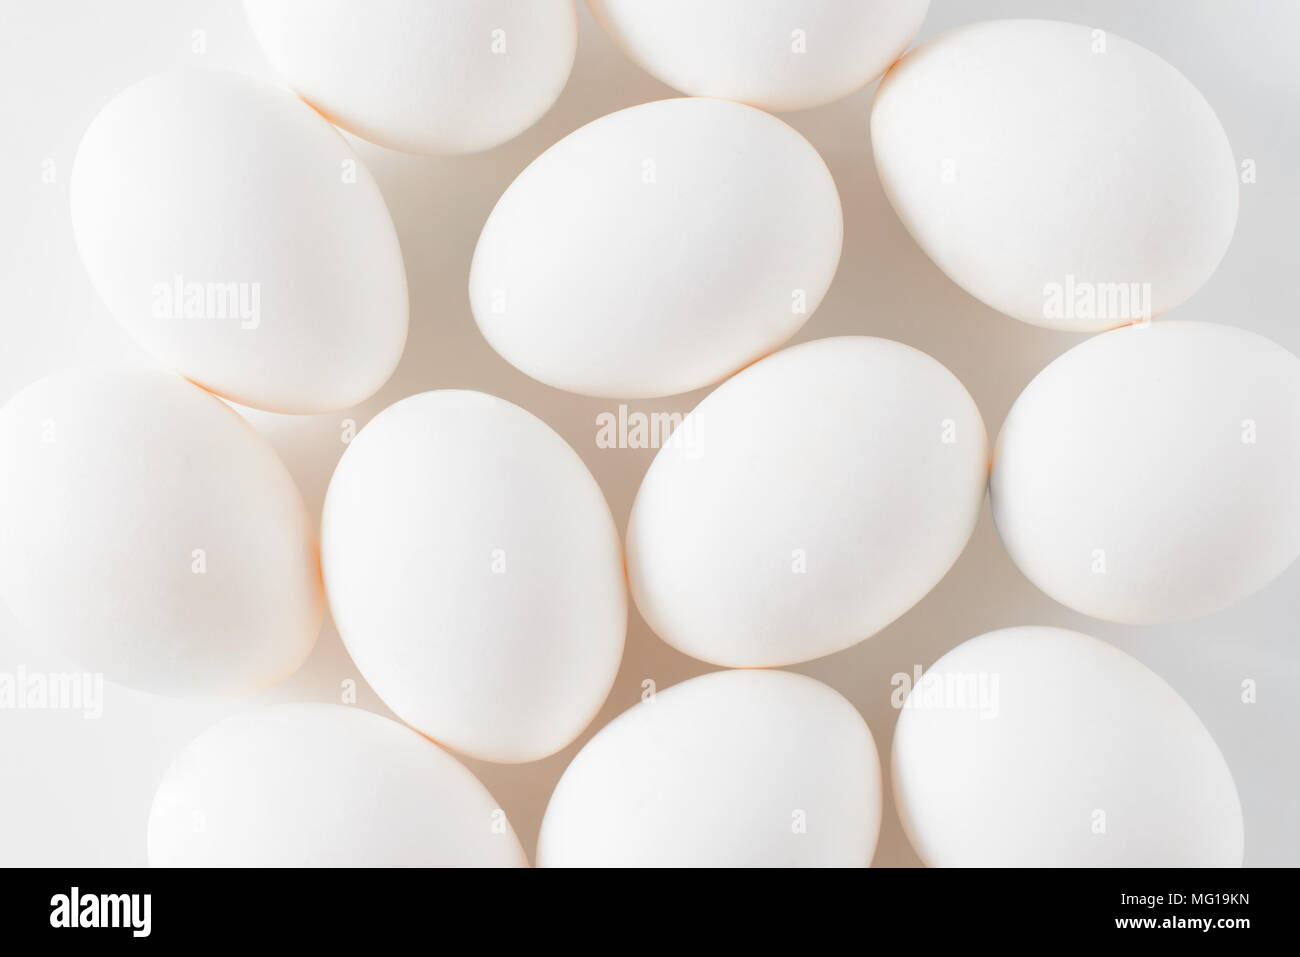 Le uova bianche su sfondo bianco. Foto di pasqua concetto. Close up. Vista da sopra. Foto Stock